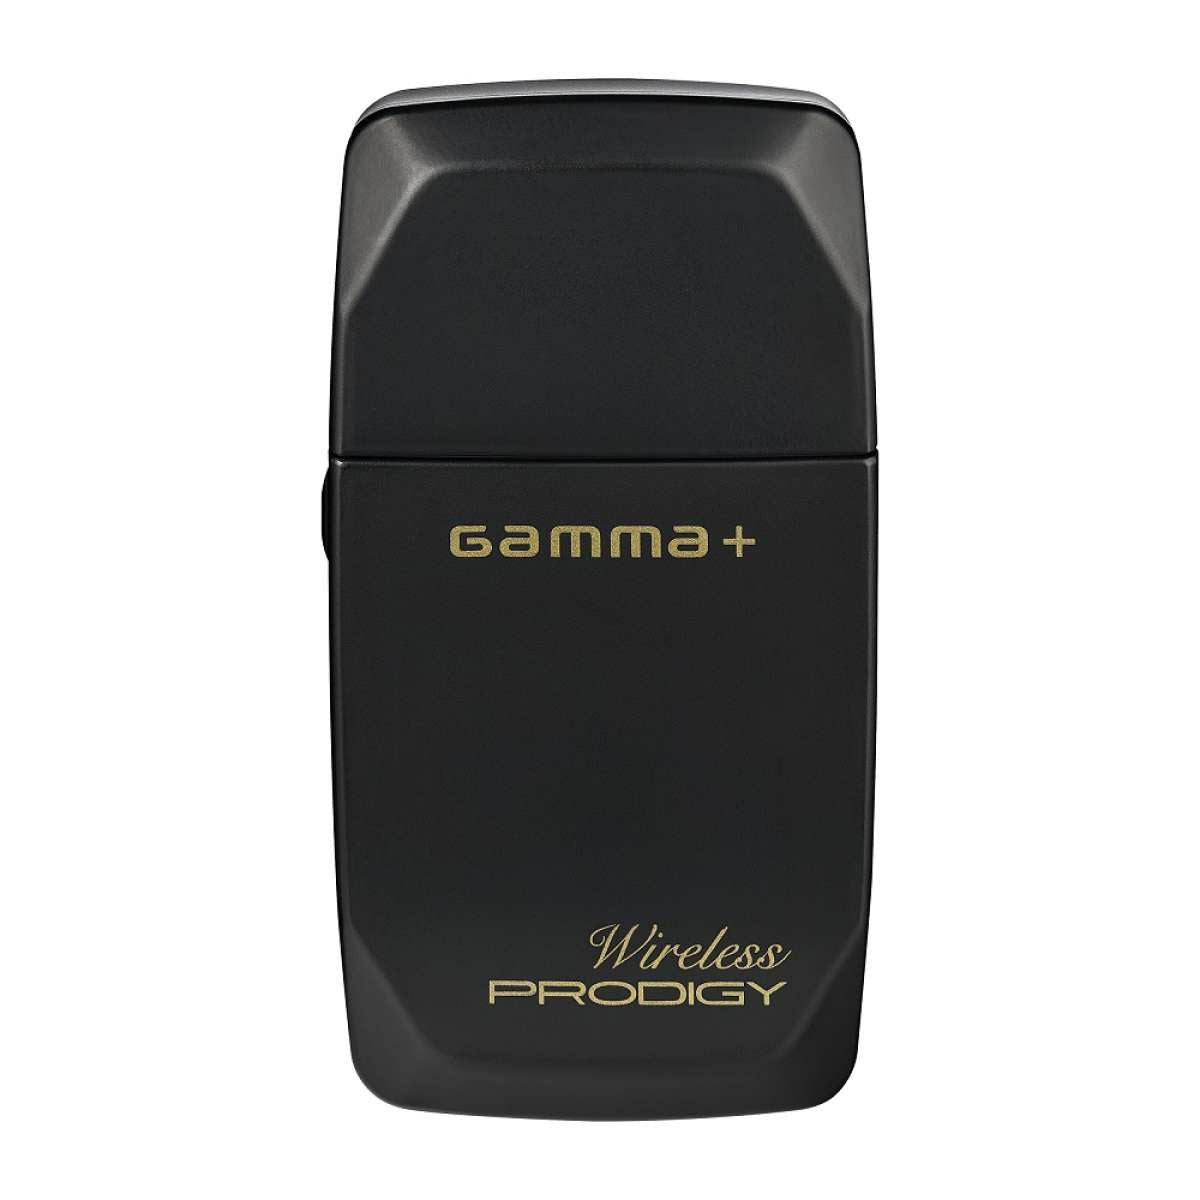 Afeitadora Wireless Prodigy Gamma Piu